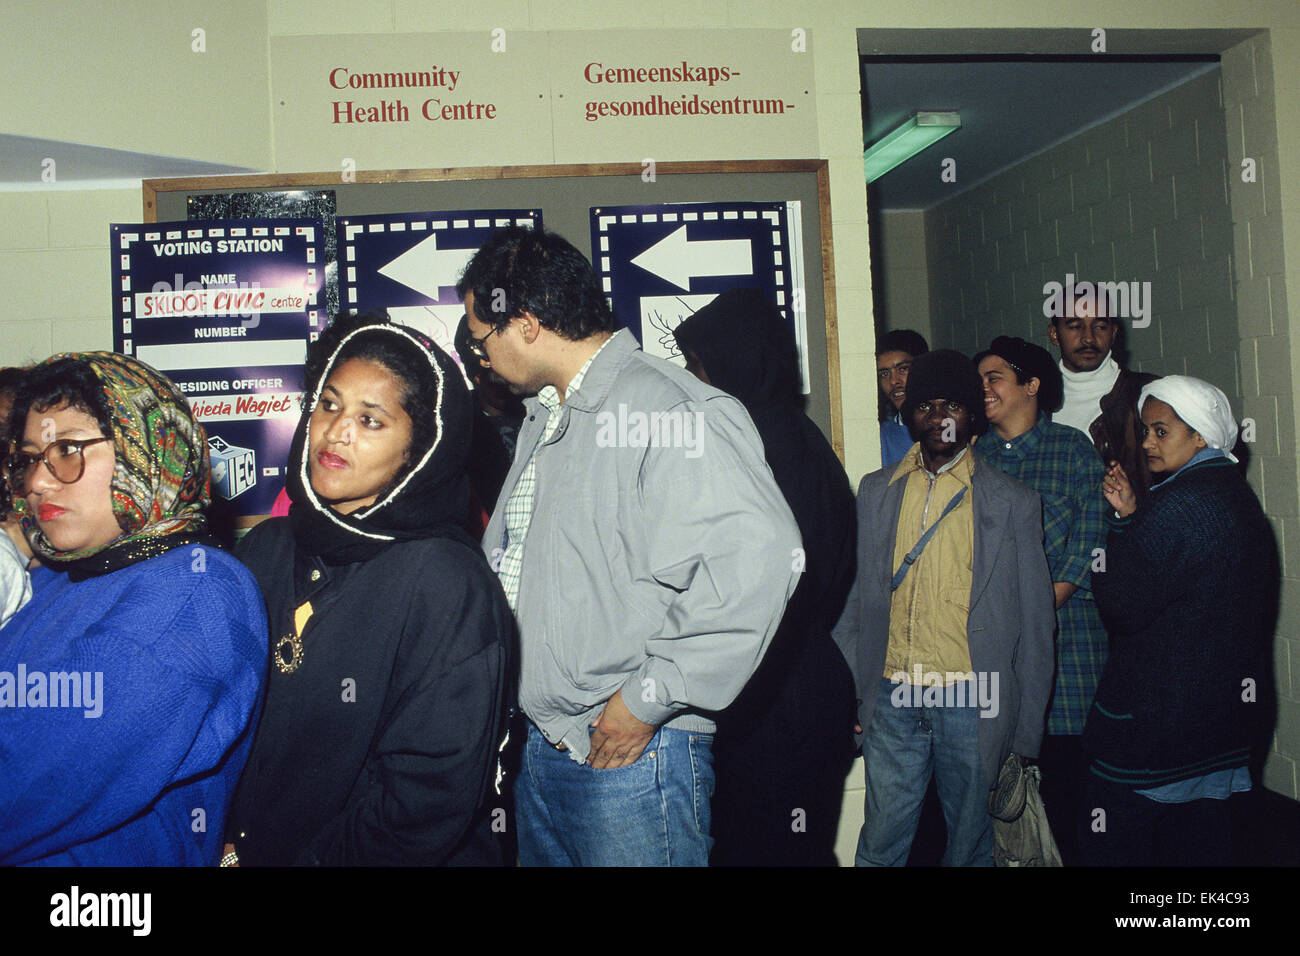 La queue pour voter dans les premières élections démocratiques d'Afrique du Sud, à Schotschekloof Civic Centre de vote, Bokaap, cap, 27/04/1994 ©photographe sue Kramer Banque D'Images